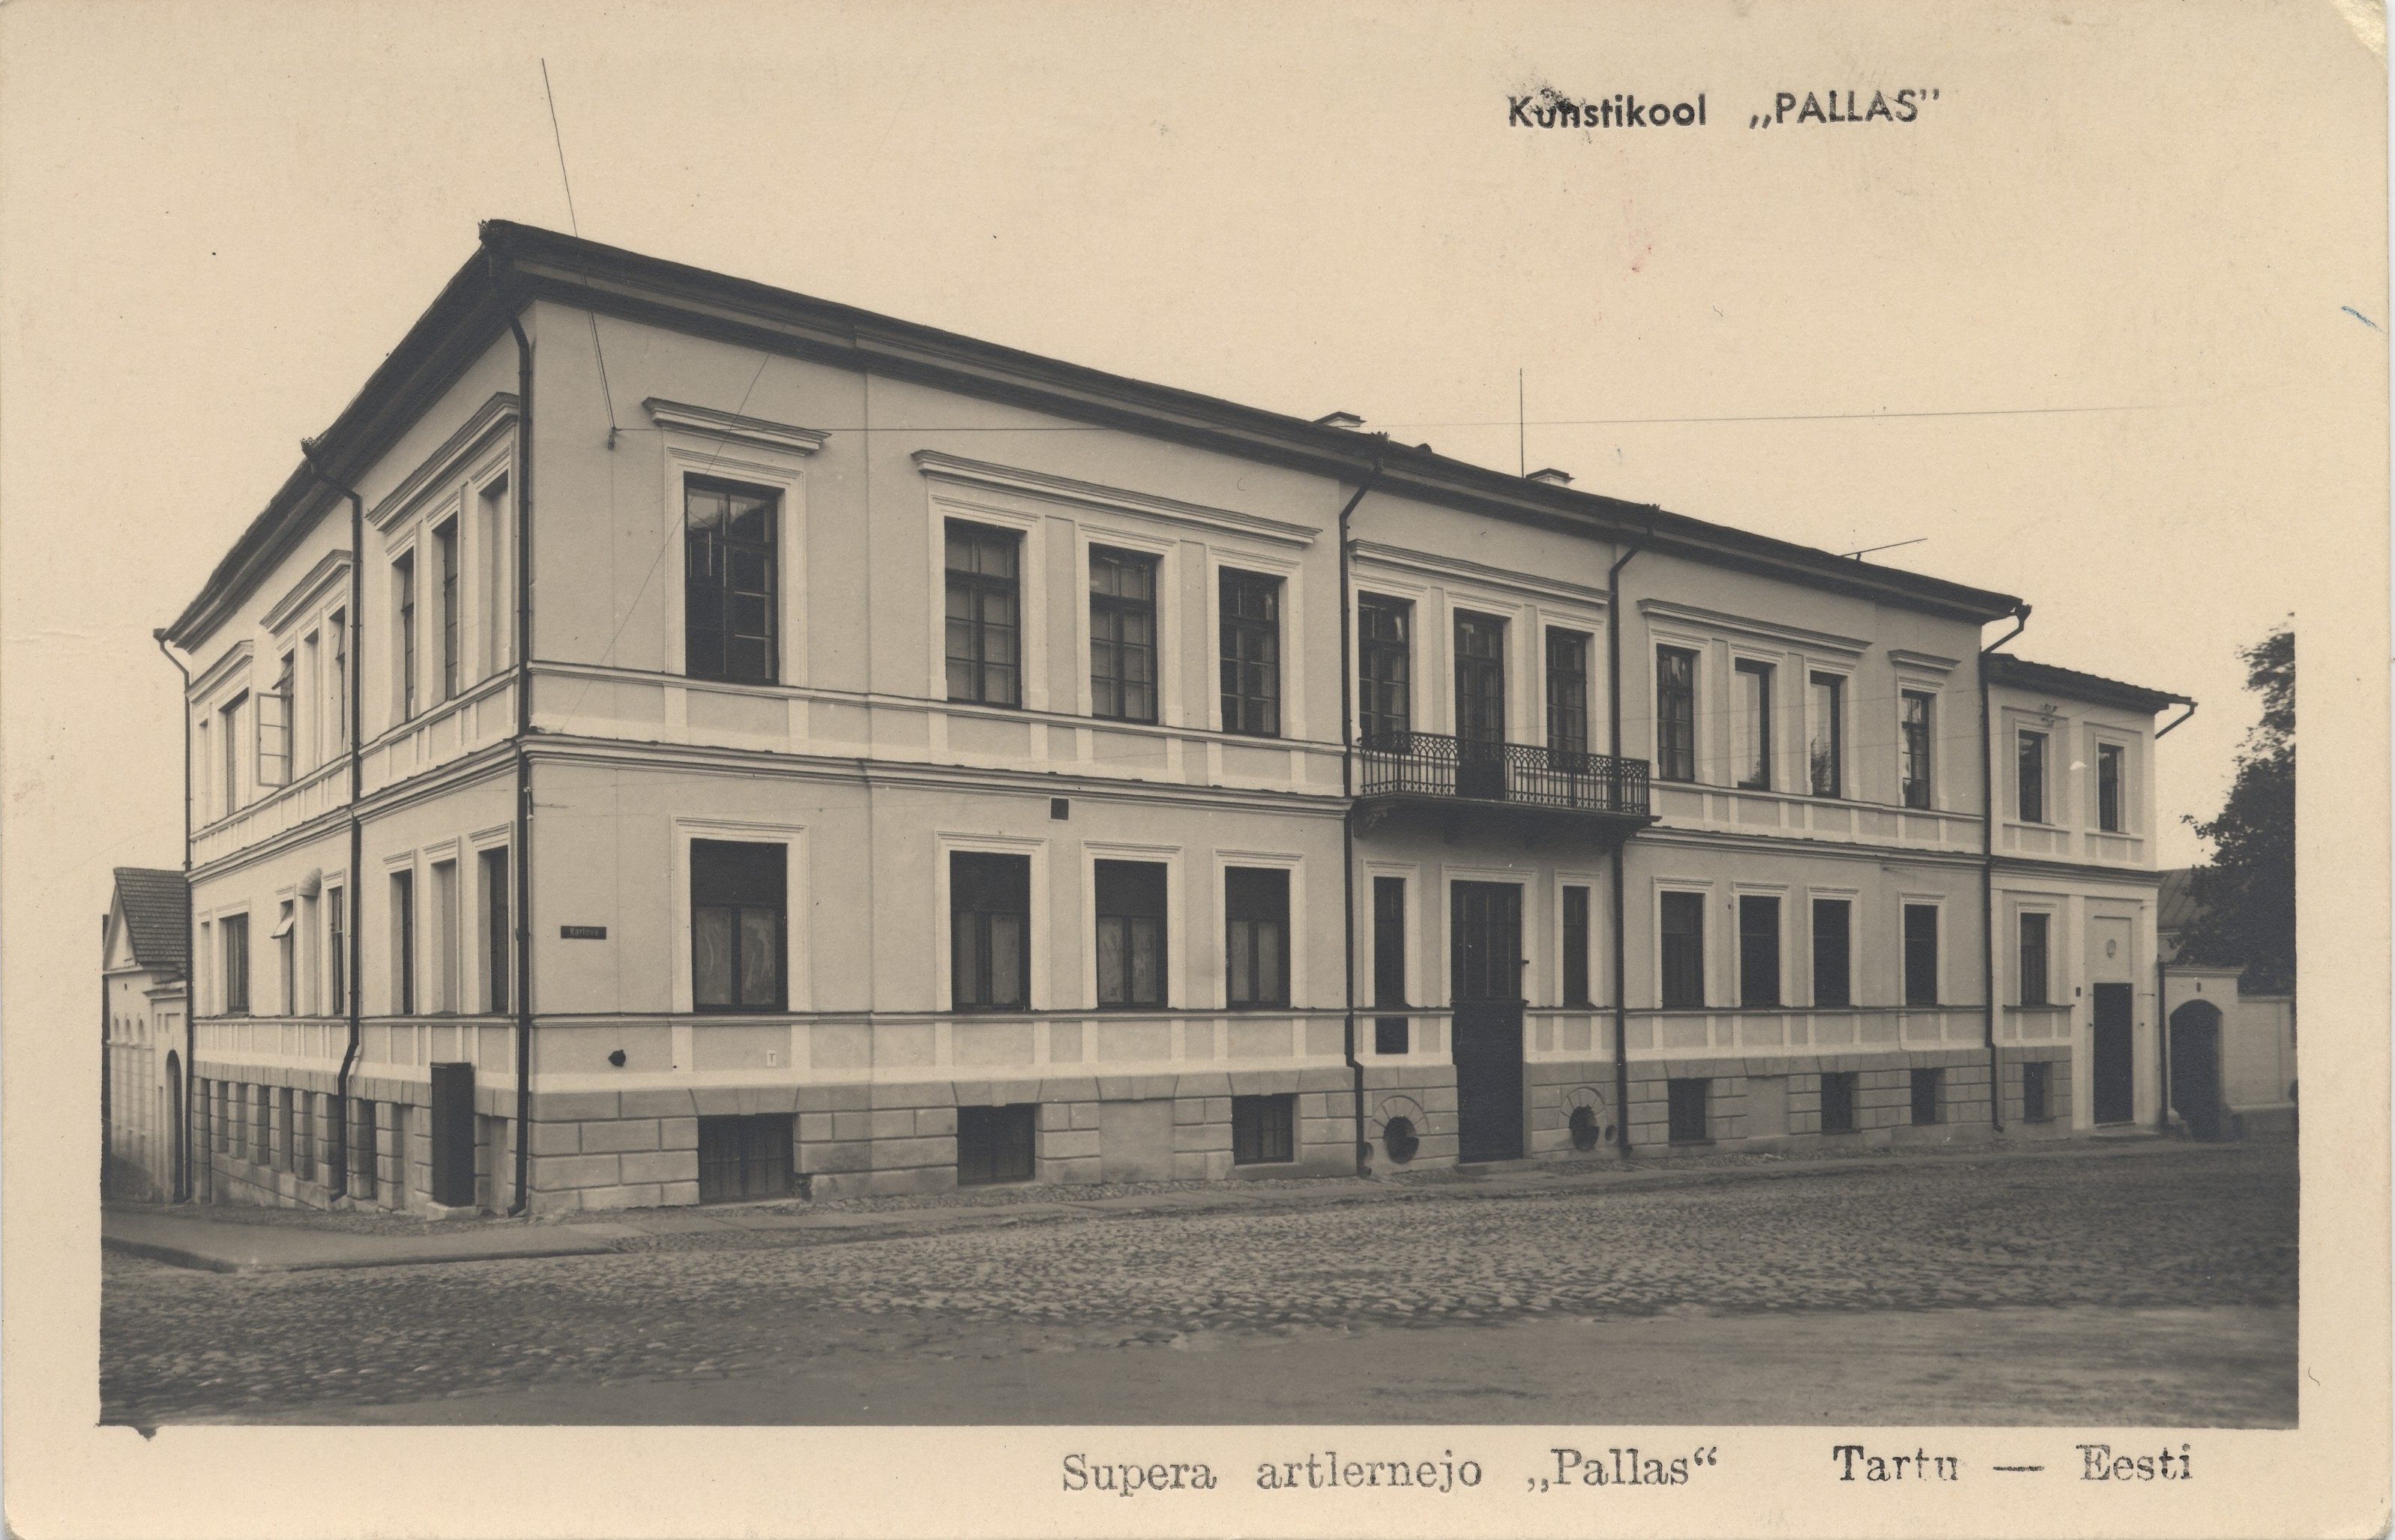 Tartu Estonia : Art School "Pallas" = supera Artlernejo "Pallas"